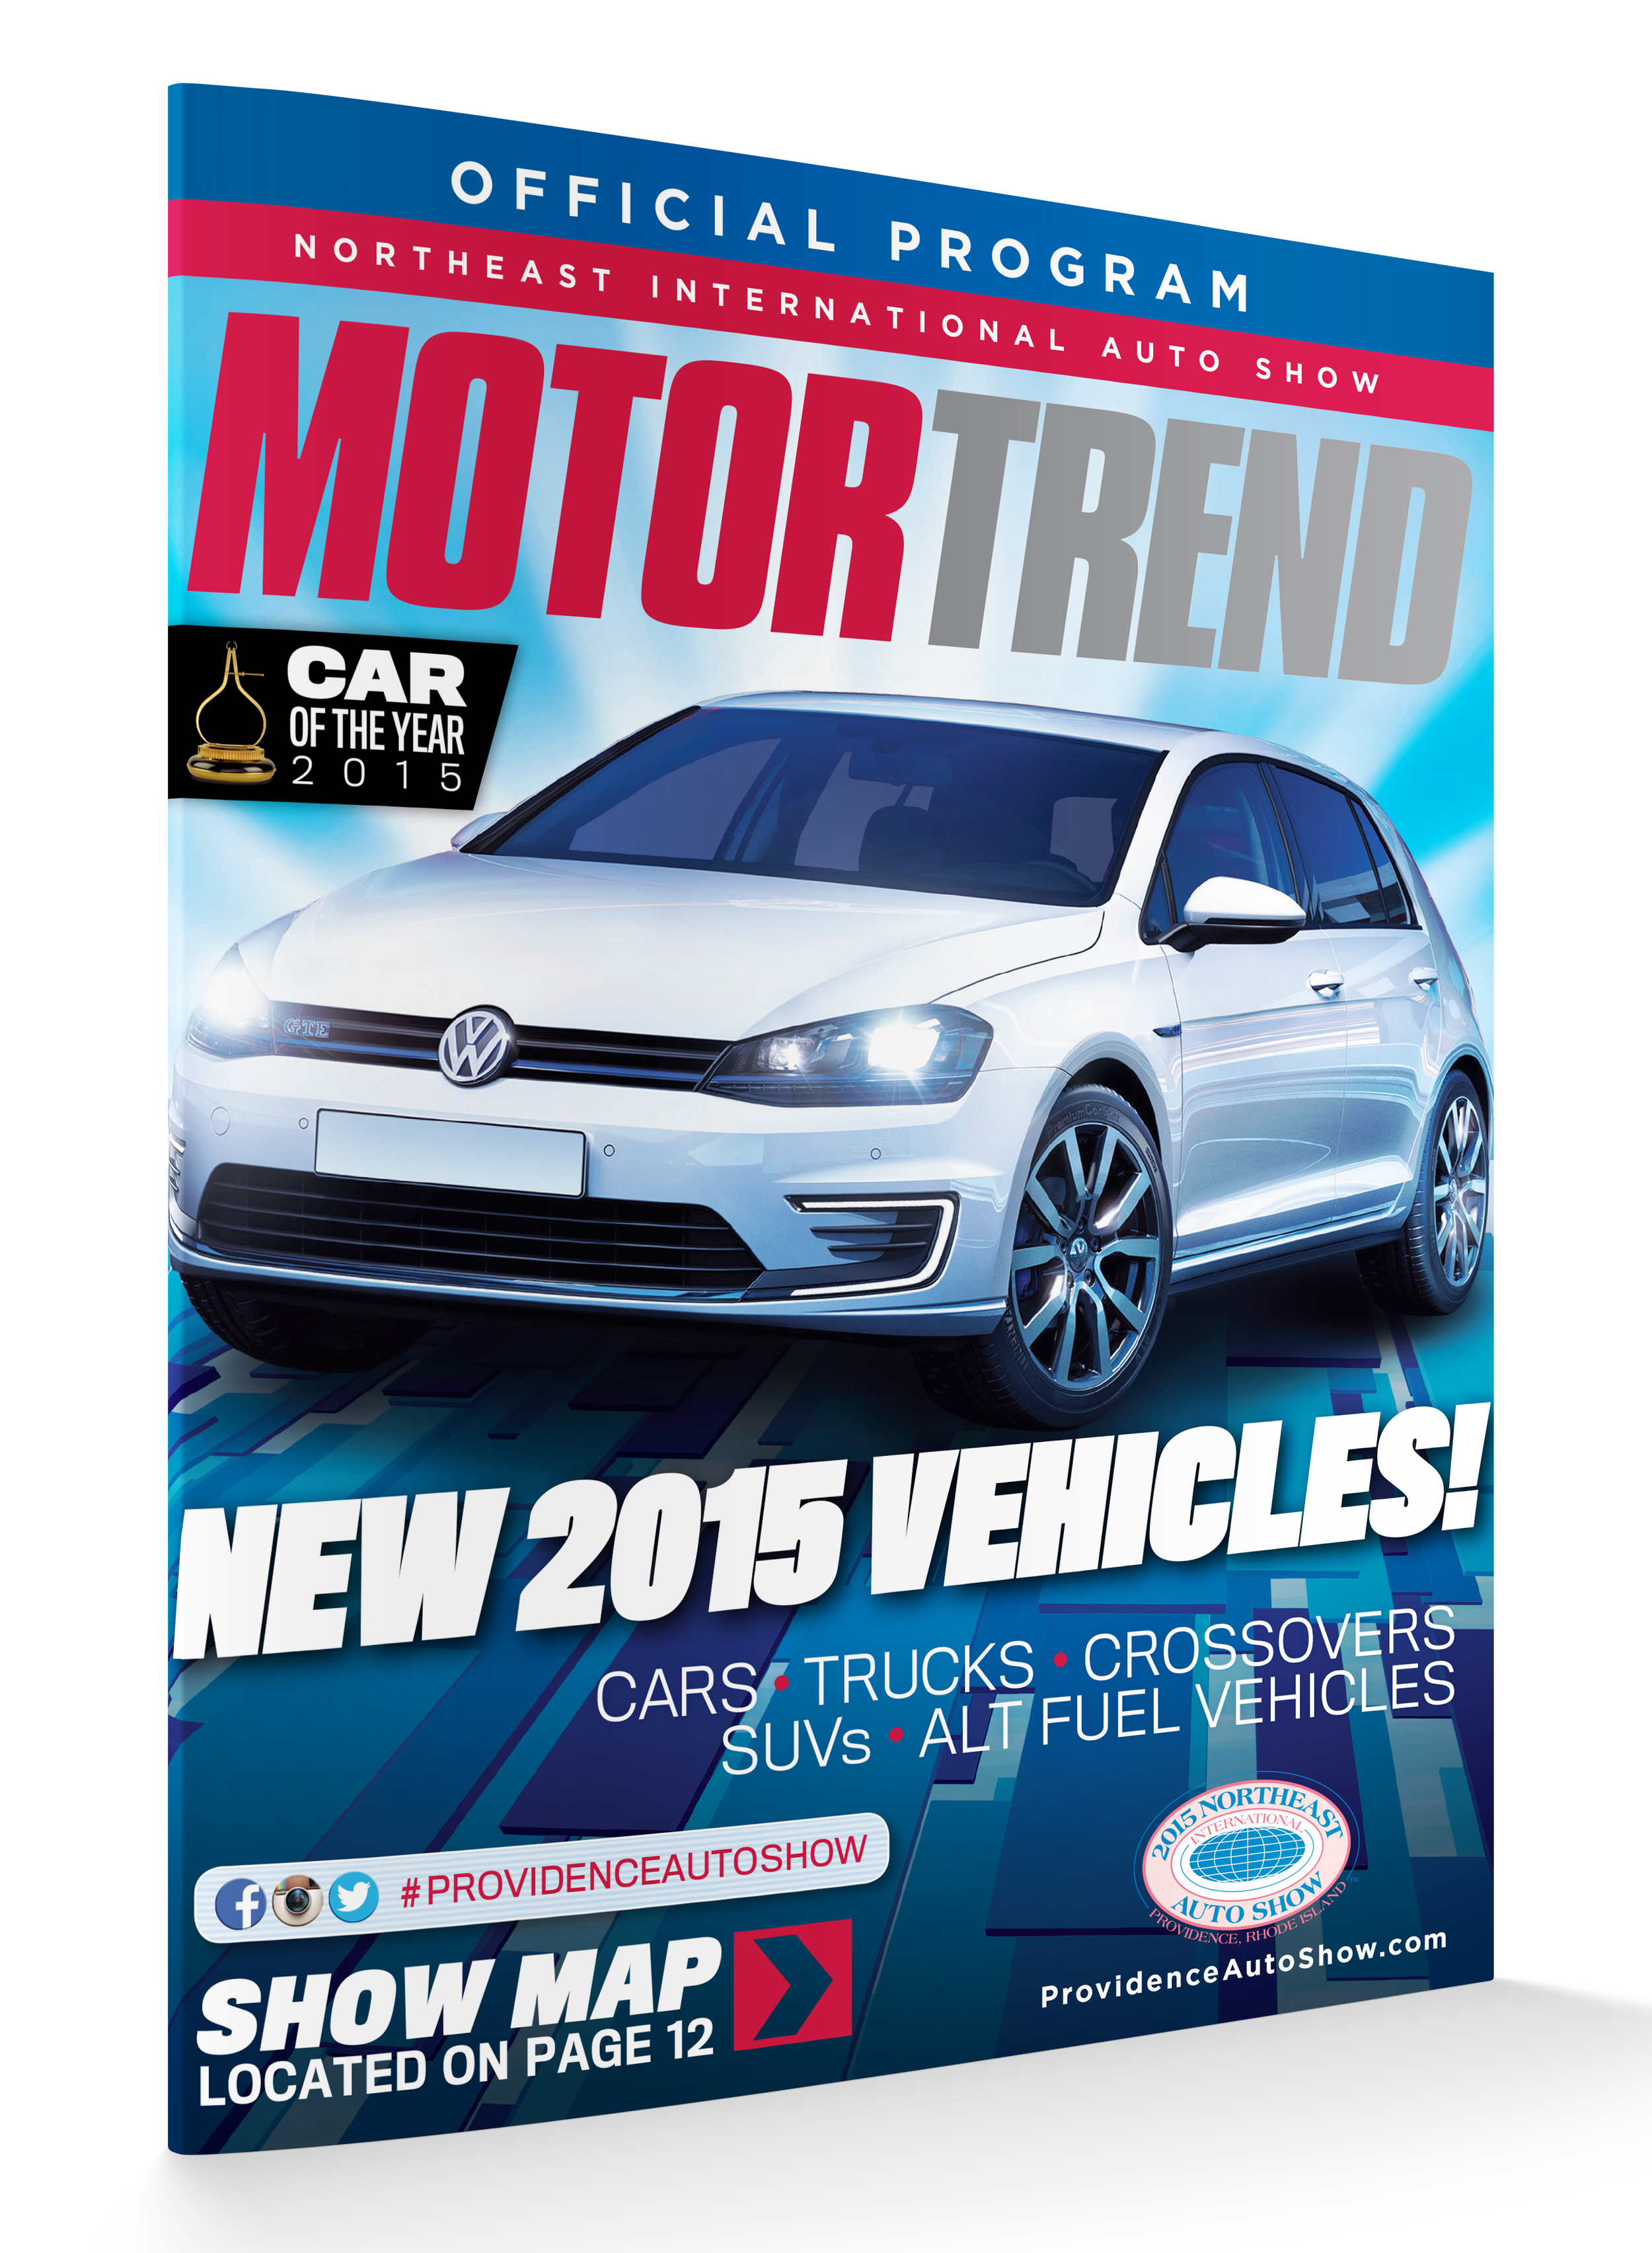 2015 Northeast International Auto Show Program Book Cover